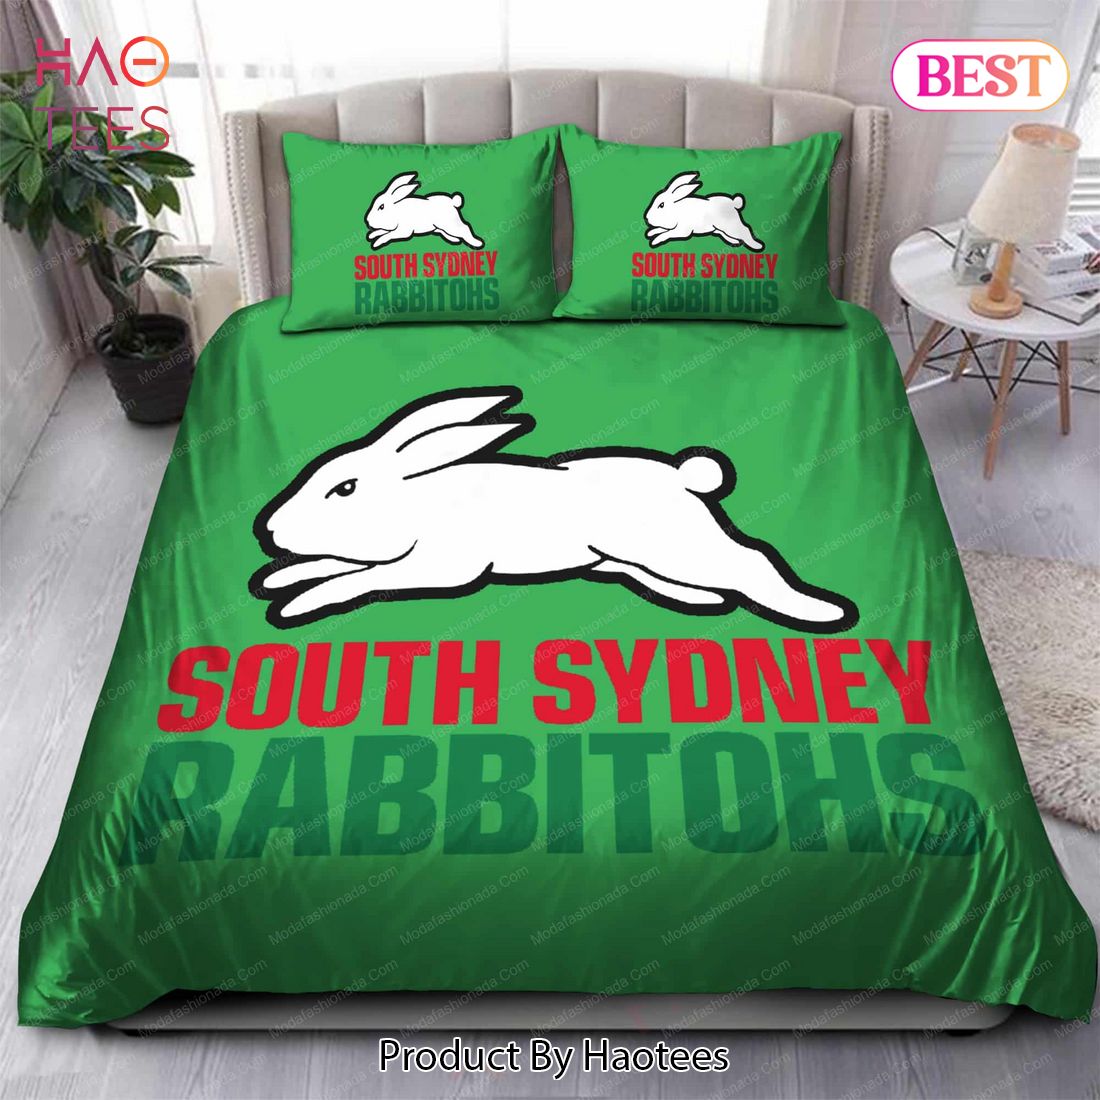 Buy South Sydney Rabbitohs Logo 2007-2012 Bedding Sets Bed Sets, Bedroom Sets, Comforter Sets, Duvet Cover, Bedspread